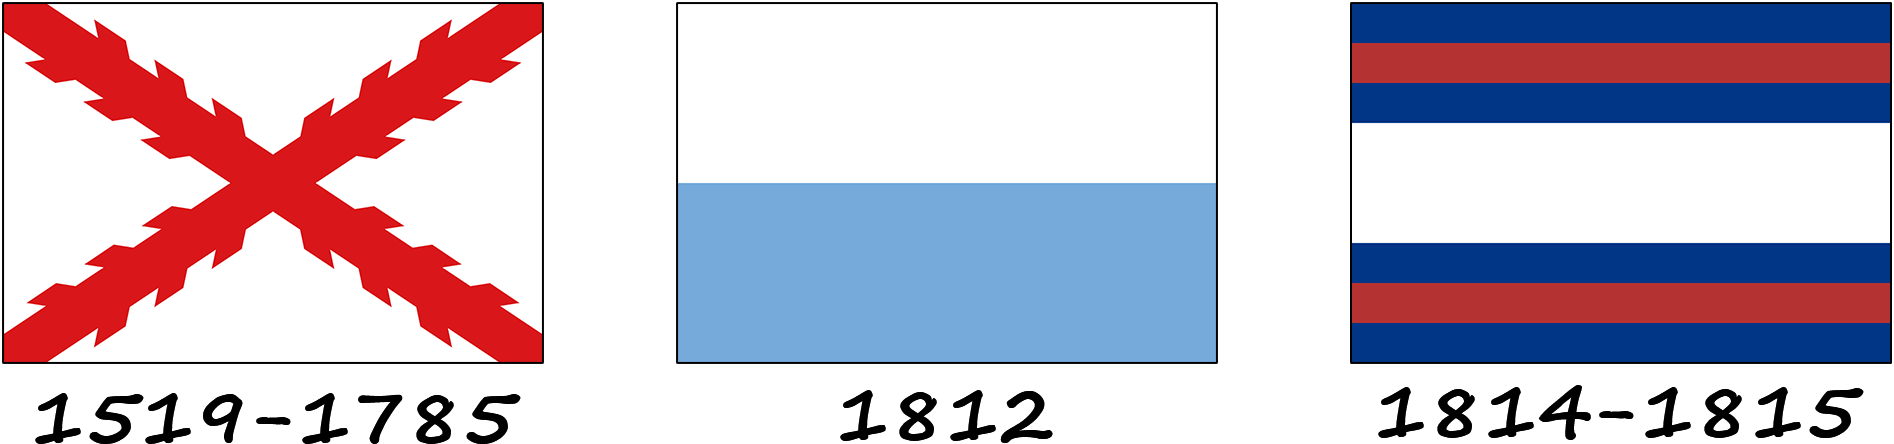 Histoire du drapeau de l'Uruguay